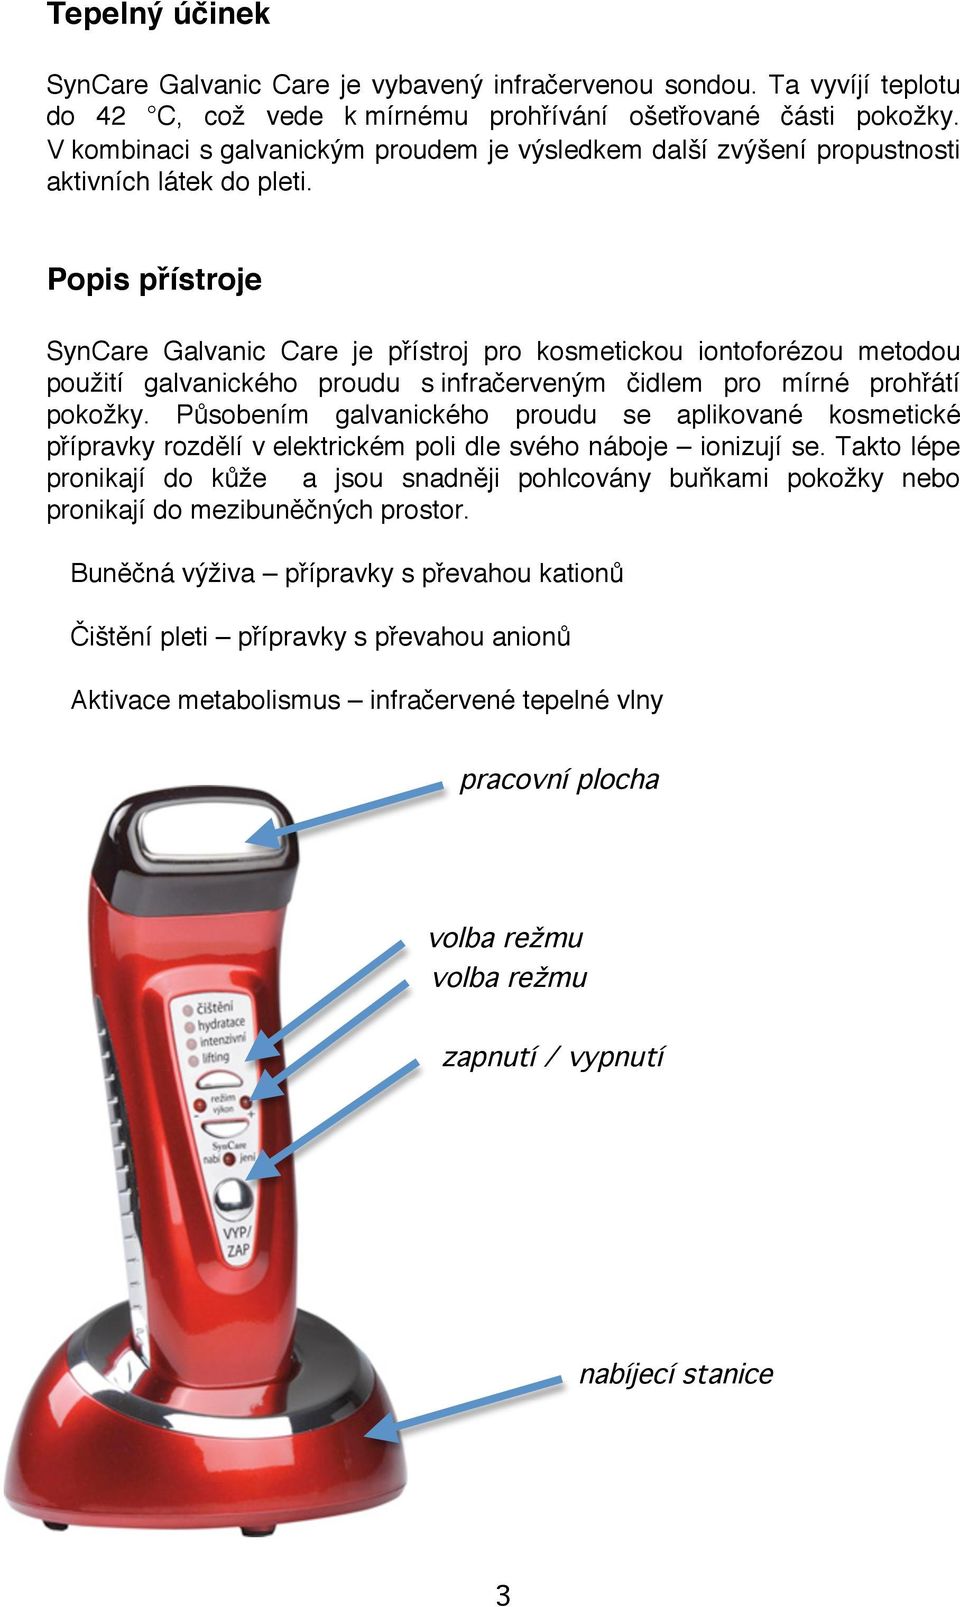 Popis přístroje SynCare Galvanic Care je přístroj pro kosmetickou iontoforézou metodou použití galvanického proudu s infračerveným čidlem pro mírné prohřátí pokožky.